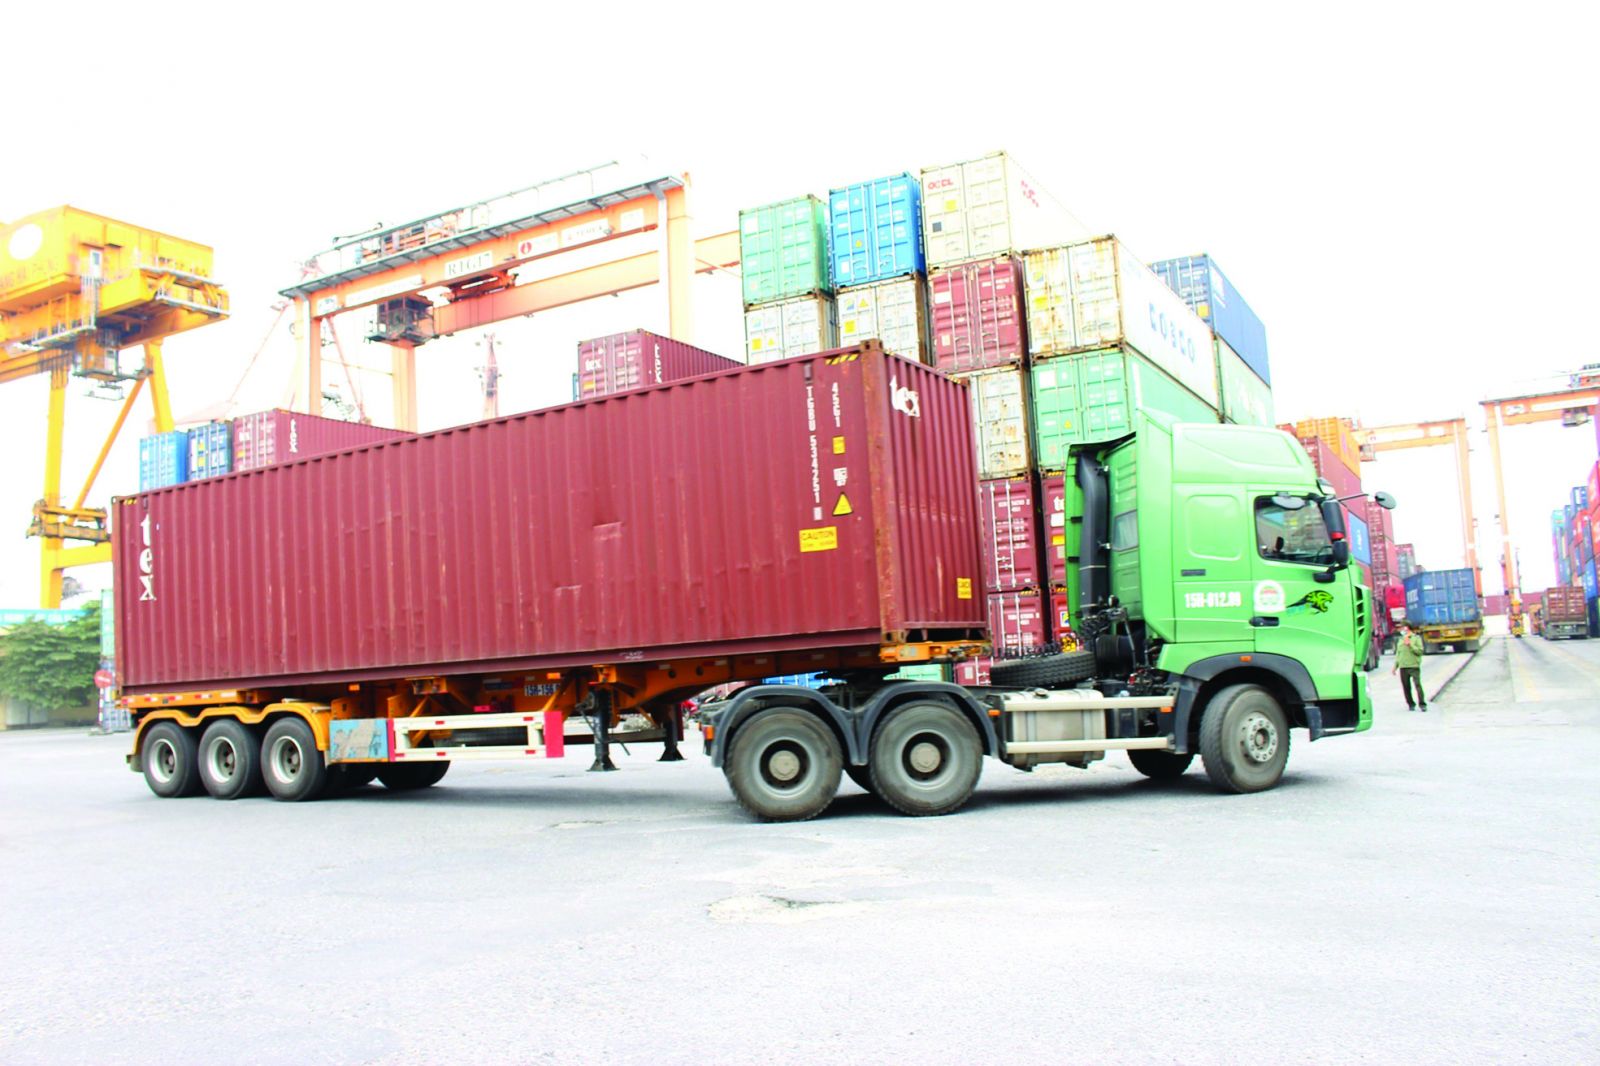  Việc xây dựng Hub trung chuyển container đang được xem là đề xuất giải pháp khắc phục tình trạng cho xe chạy rỗng.